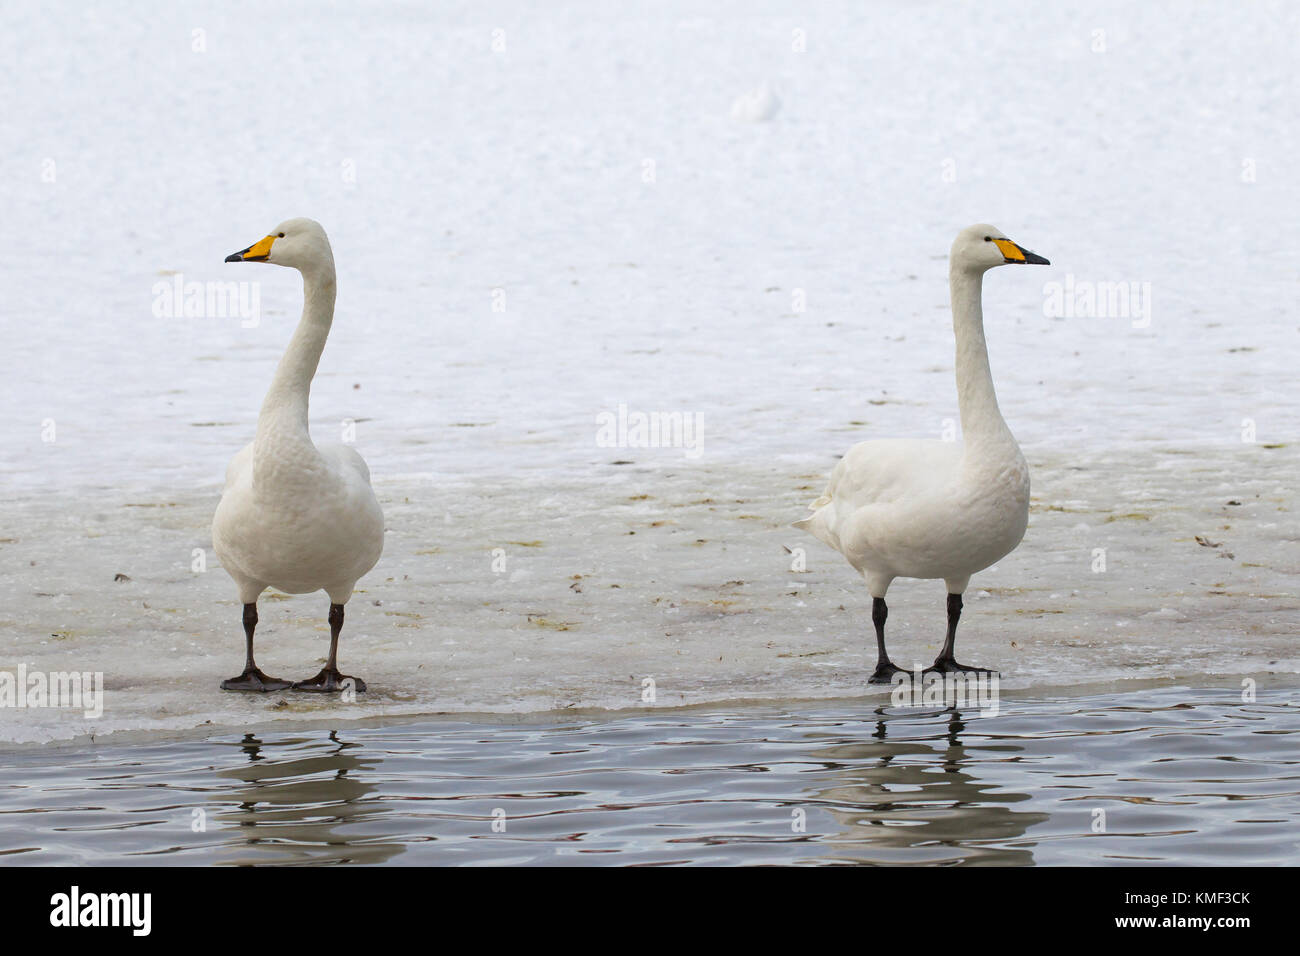 Deux cygnes chanteurs (Cygnus cygnus) debout sur la glace de l'étang gelé en hiver Banque D'Images